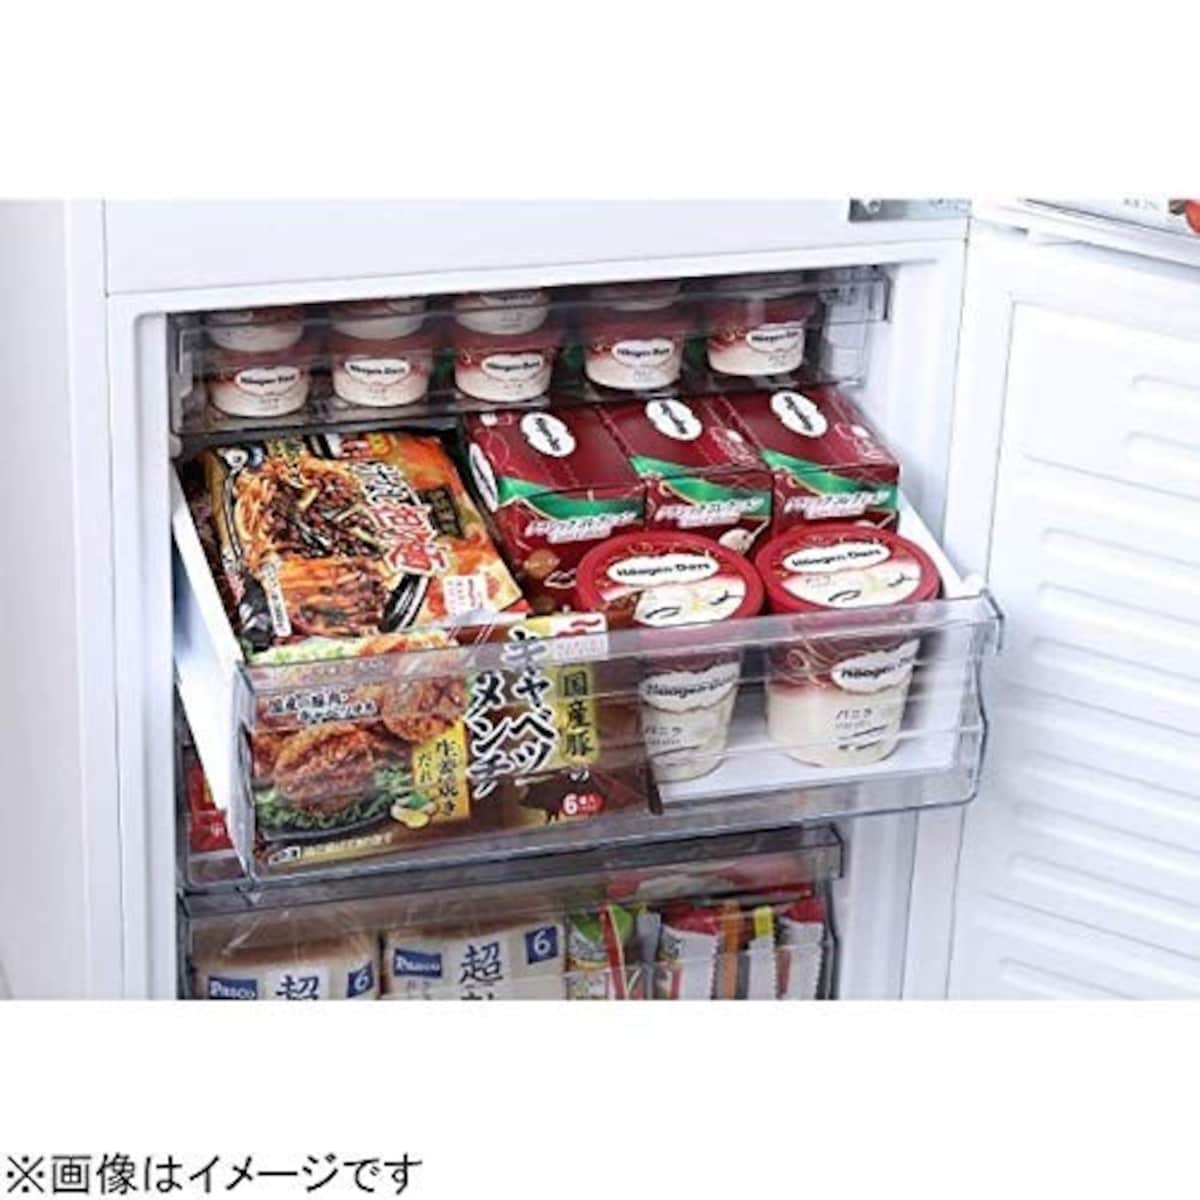  2ドア冷凍冷蔵庫 ハーフ&ハーフ画像3 